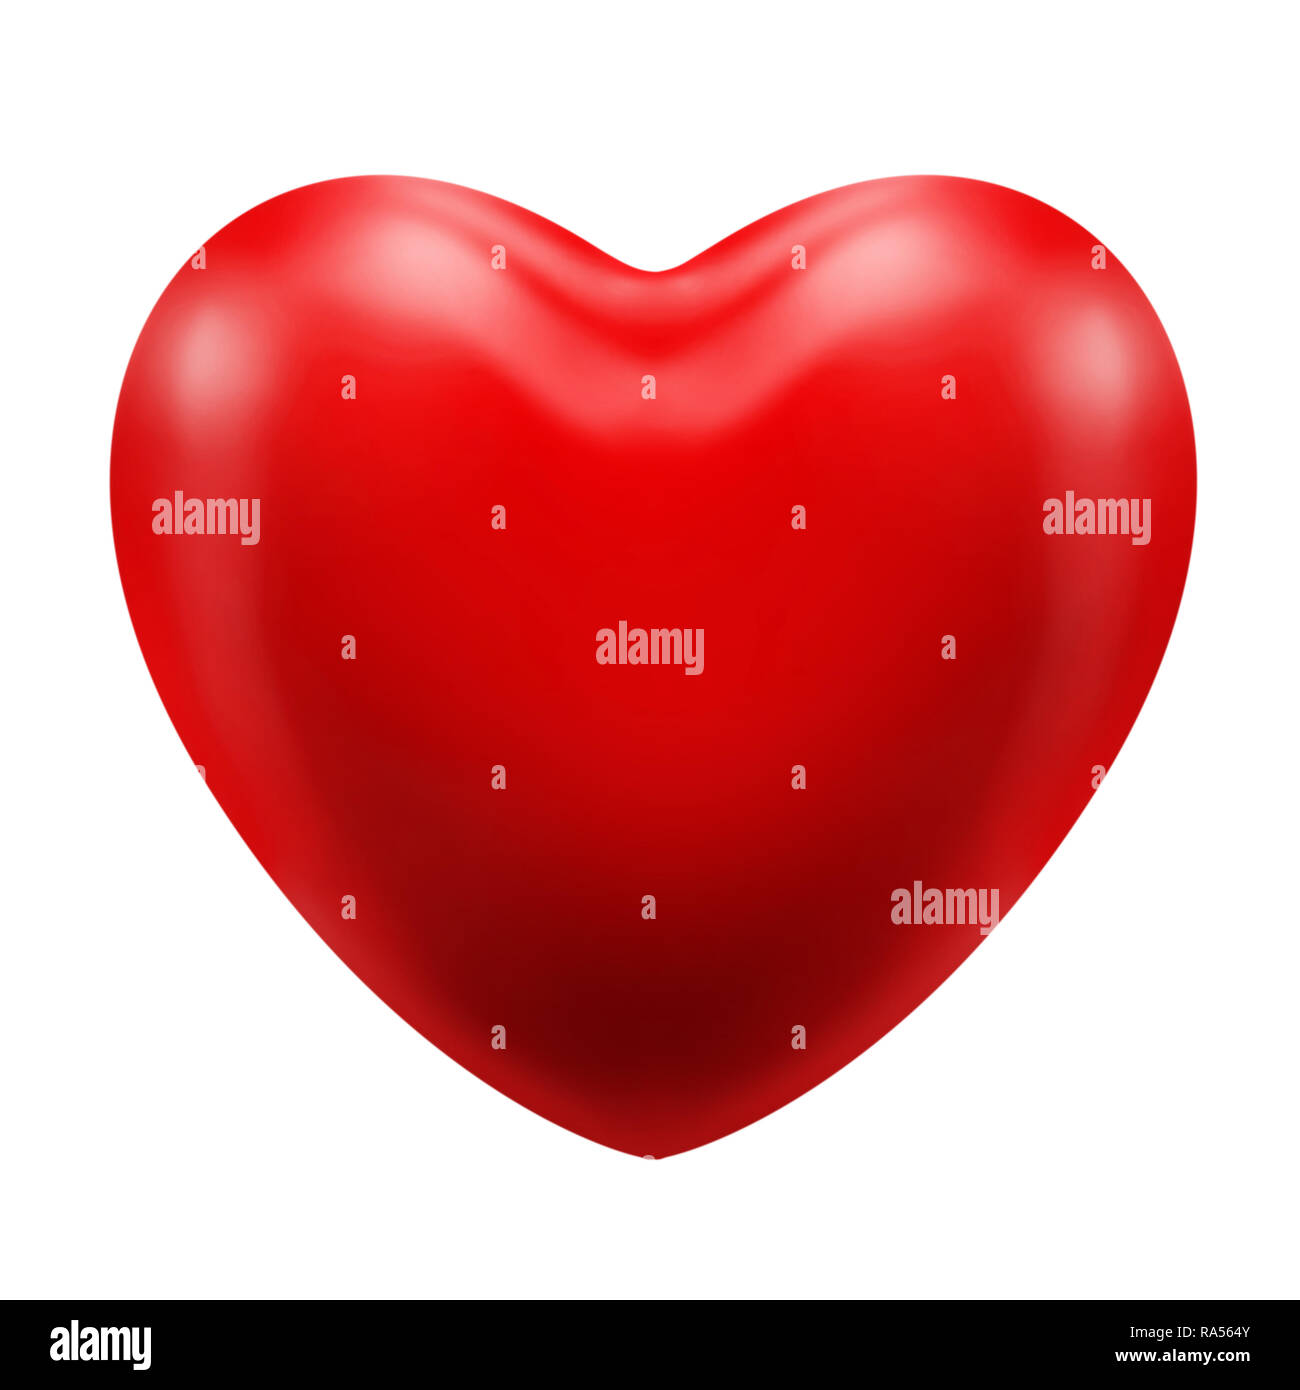 Red classic icona cuore un rapporto love affair romanticismo apprezzamento di una persona o di un oggetto o una cosa Foto Stock